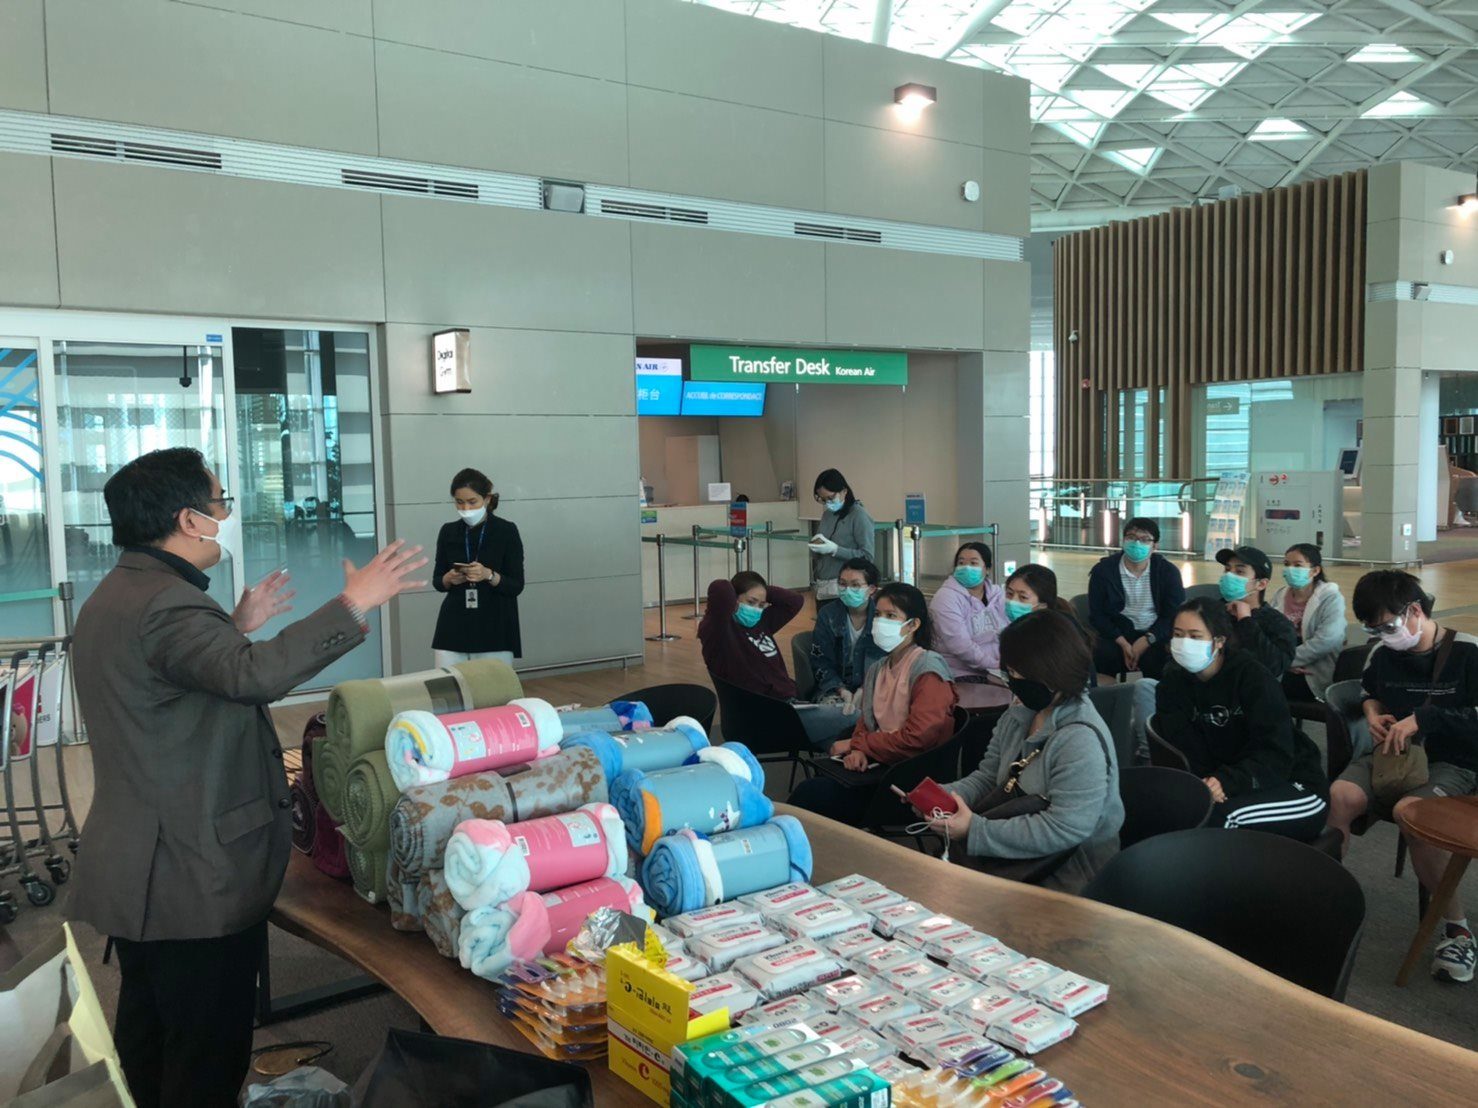 สถานเอกอัครราชทูต ณ กรุงโซลให้ความช่วยเหลือคนไทยที่สนามบินอินชอน